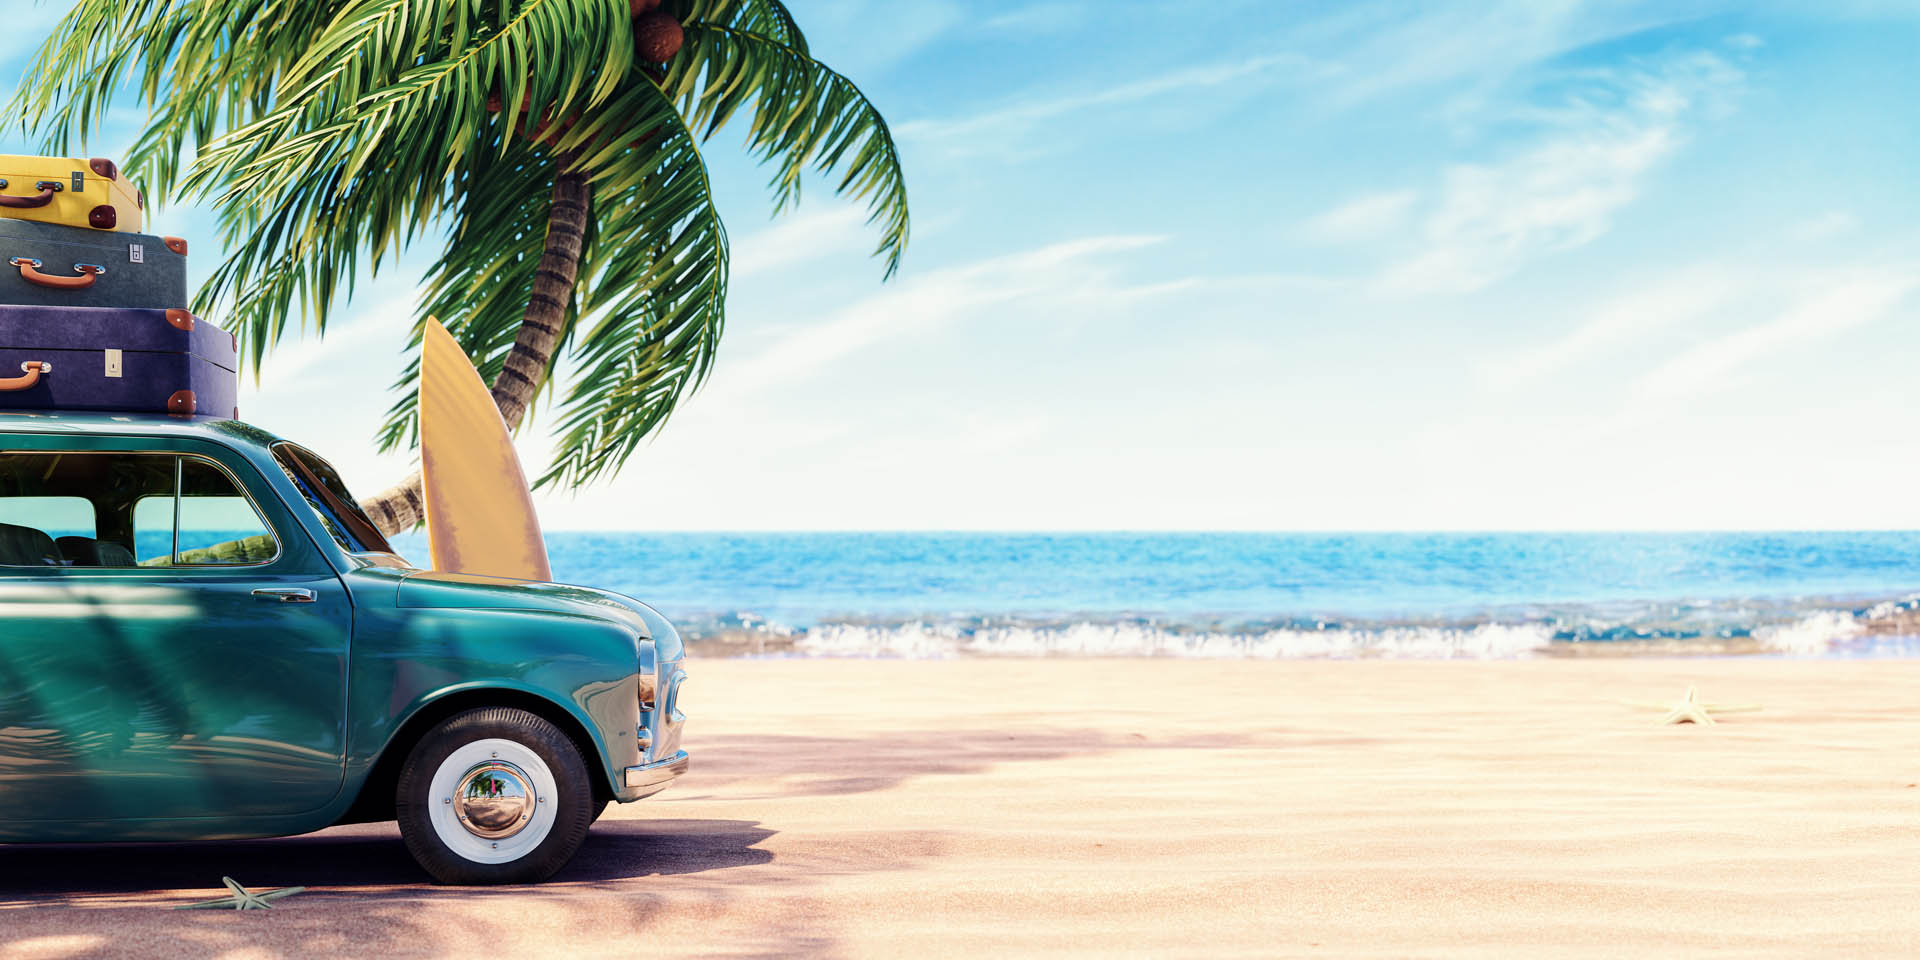 Лятна промоция с отстъпка, кола с багаж на плаж с палми